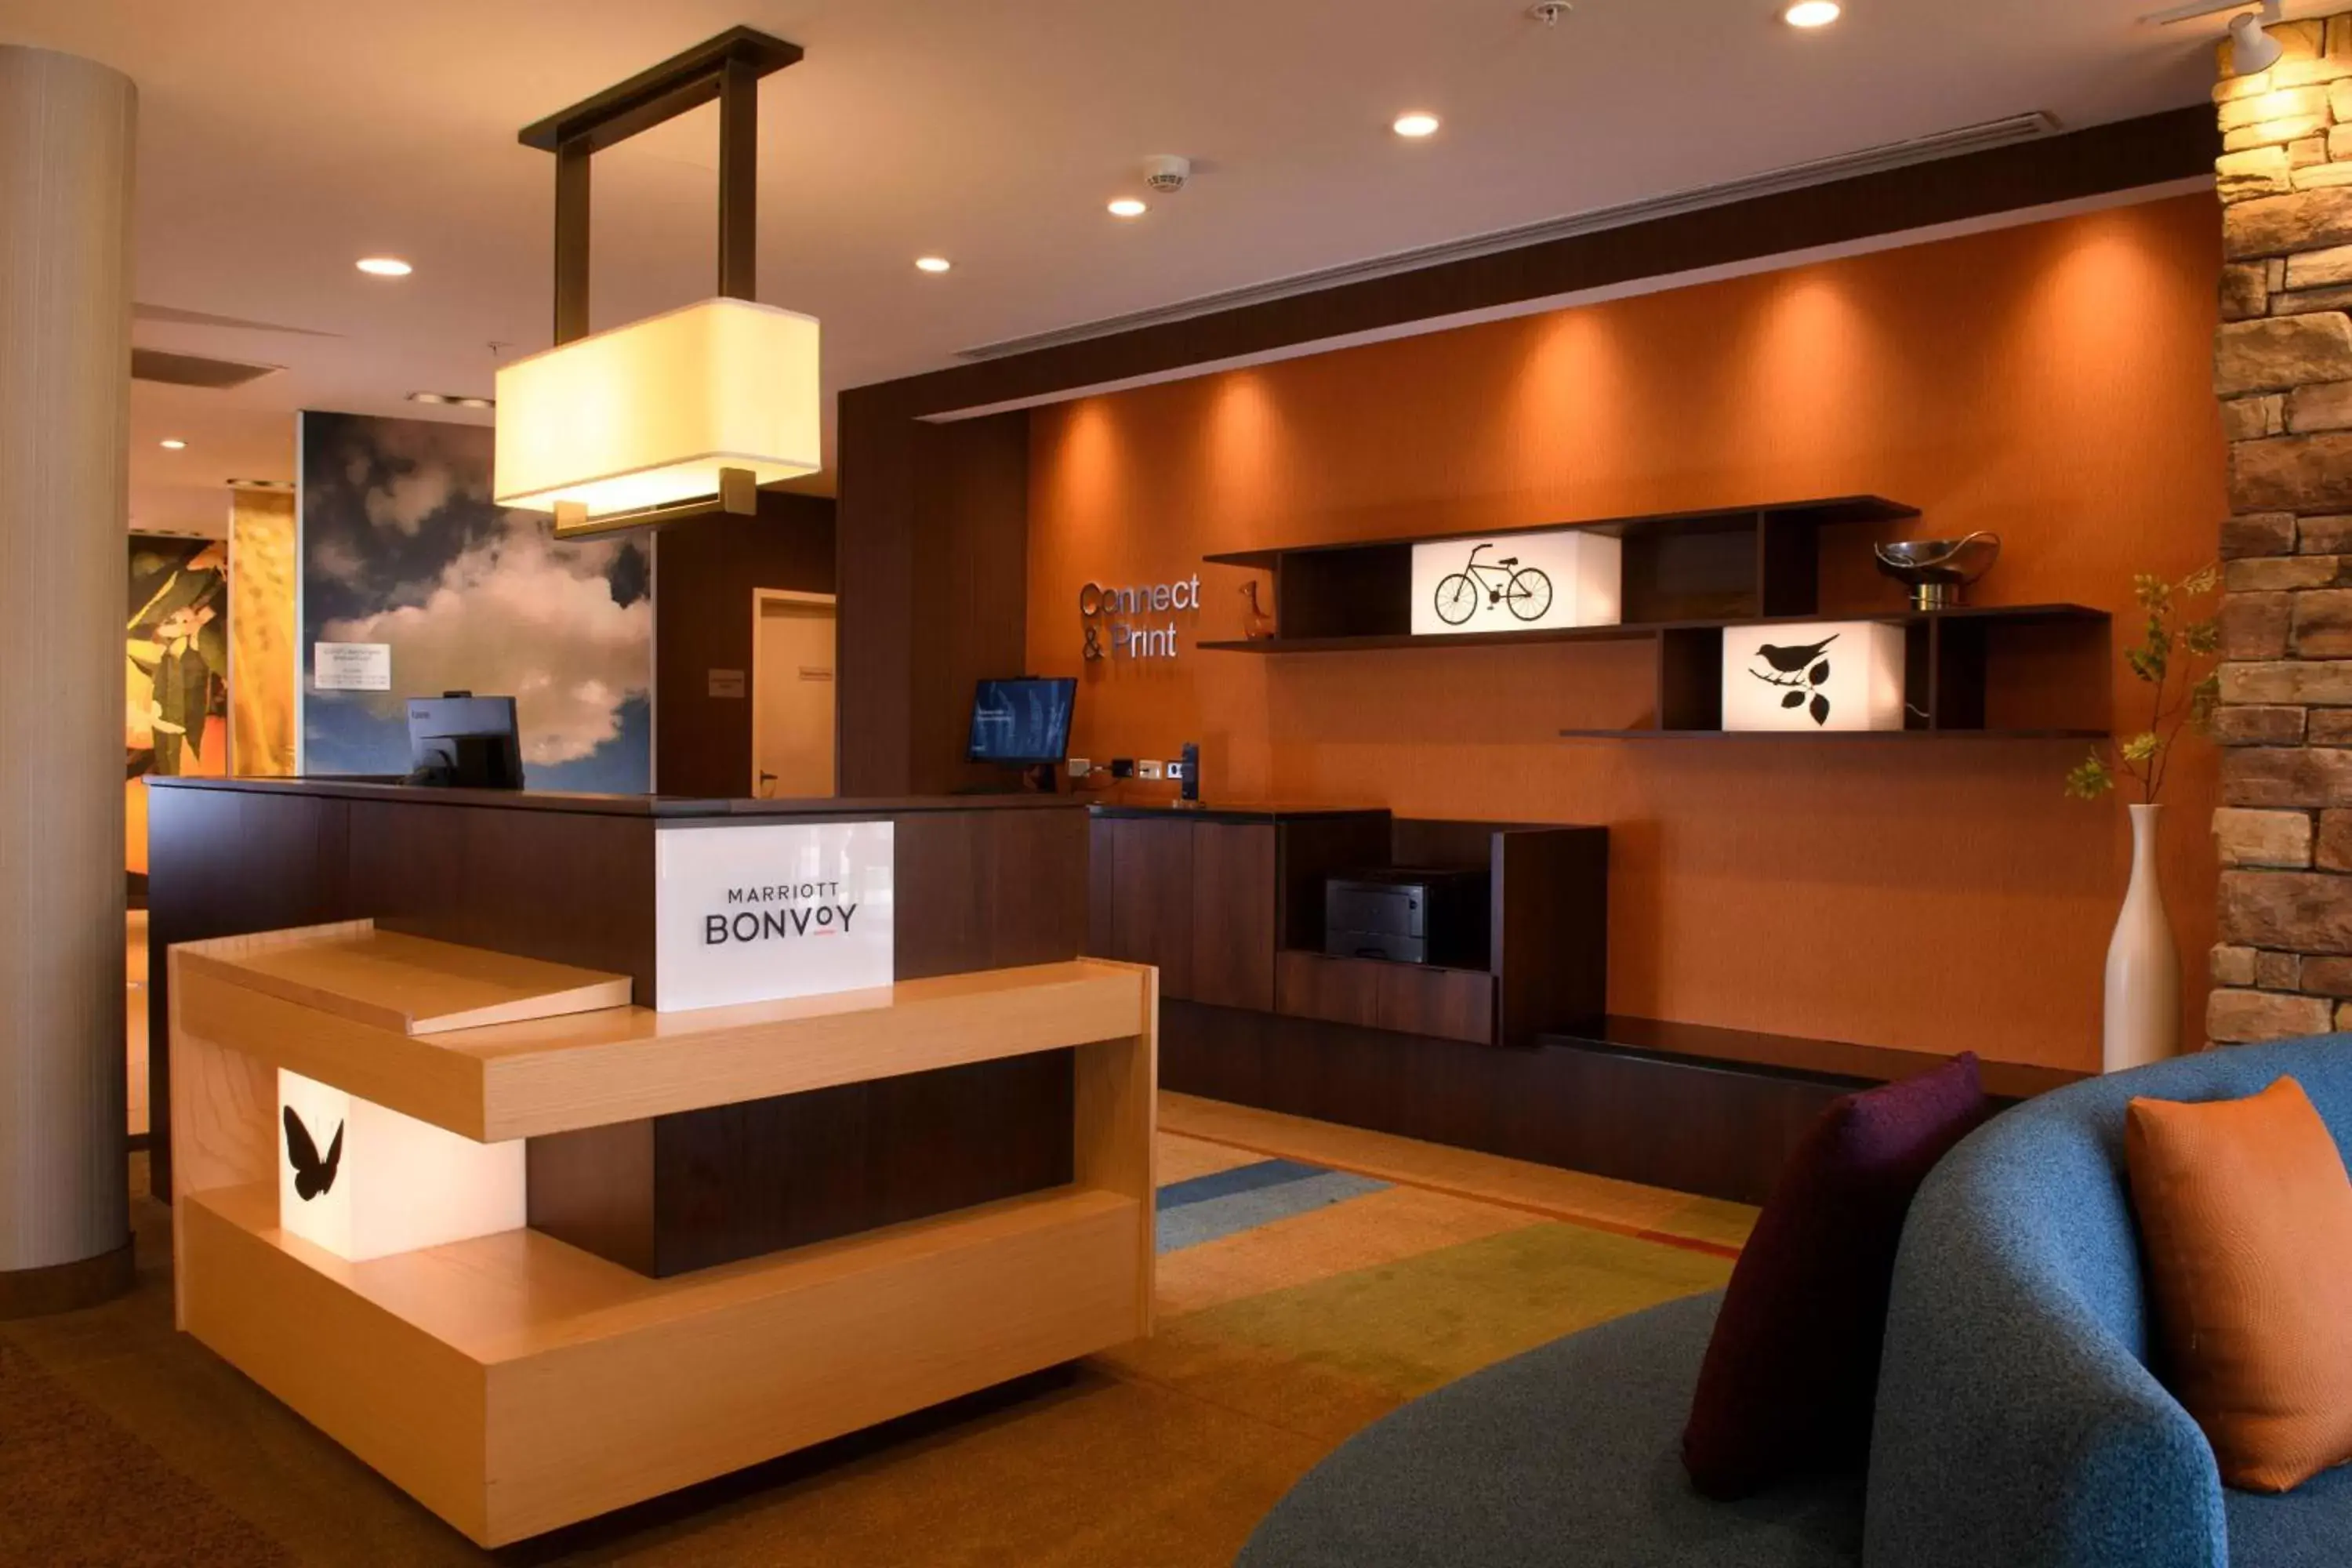 Lobby or reception, Lobby/Reception in Fairfield Inn & Suites by Marriott Richmond Ashland